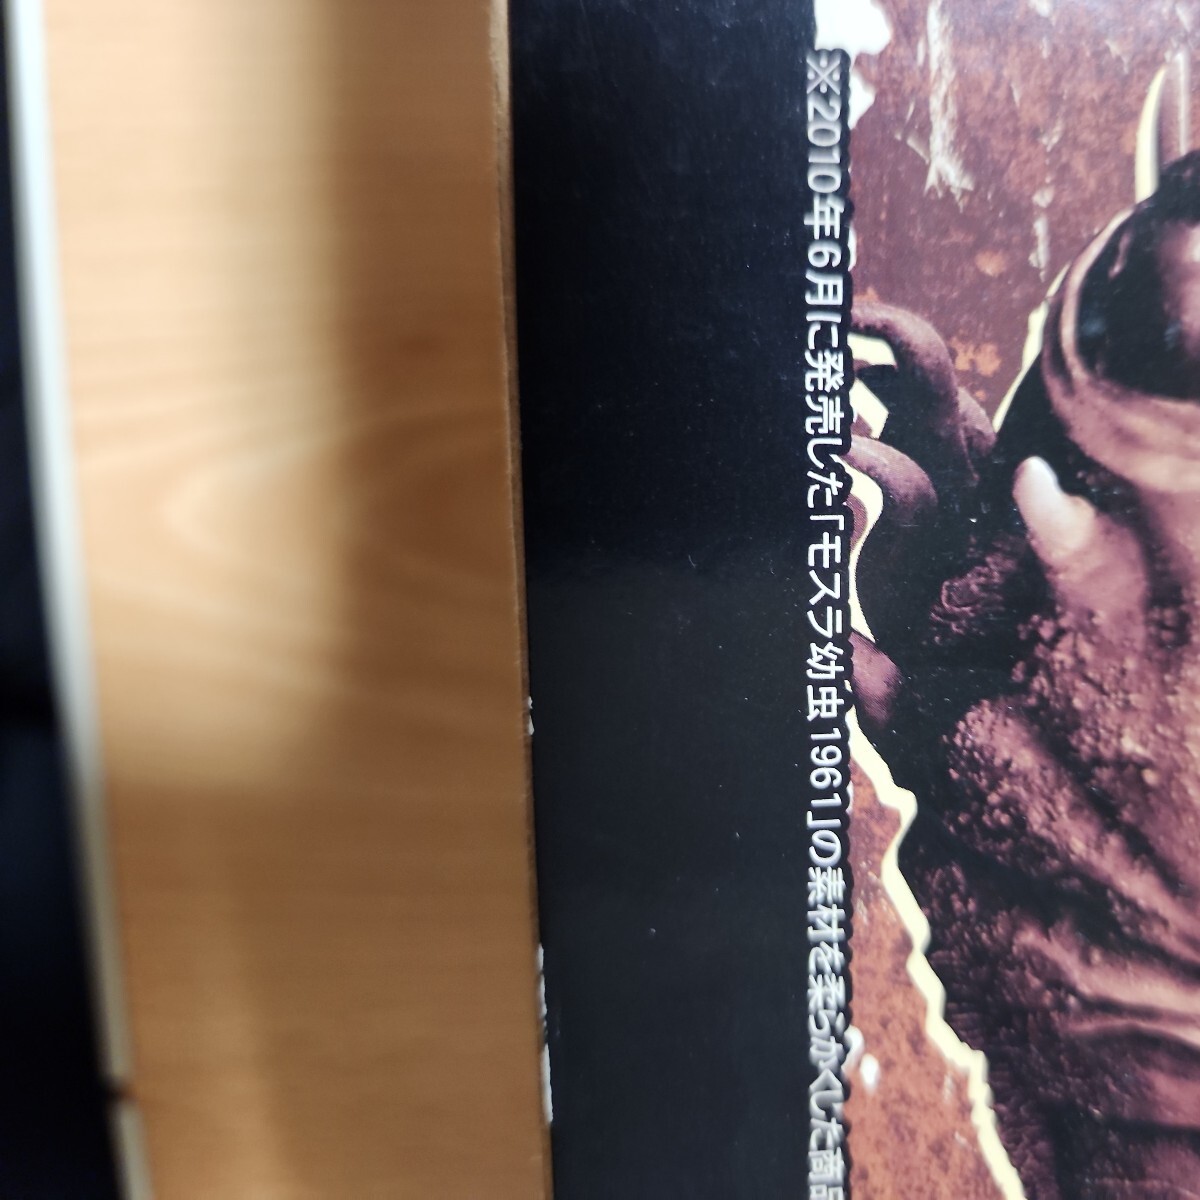 日本正規品東宝30cmシリーズモスラ1961モスラ幼虫少年リック限定軟質版開封品絶版入手困難レア検索X-PLUSエクスプラス東宝大怪獣ゴジラ_画像5